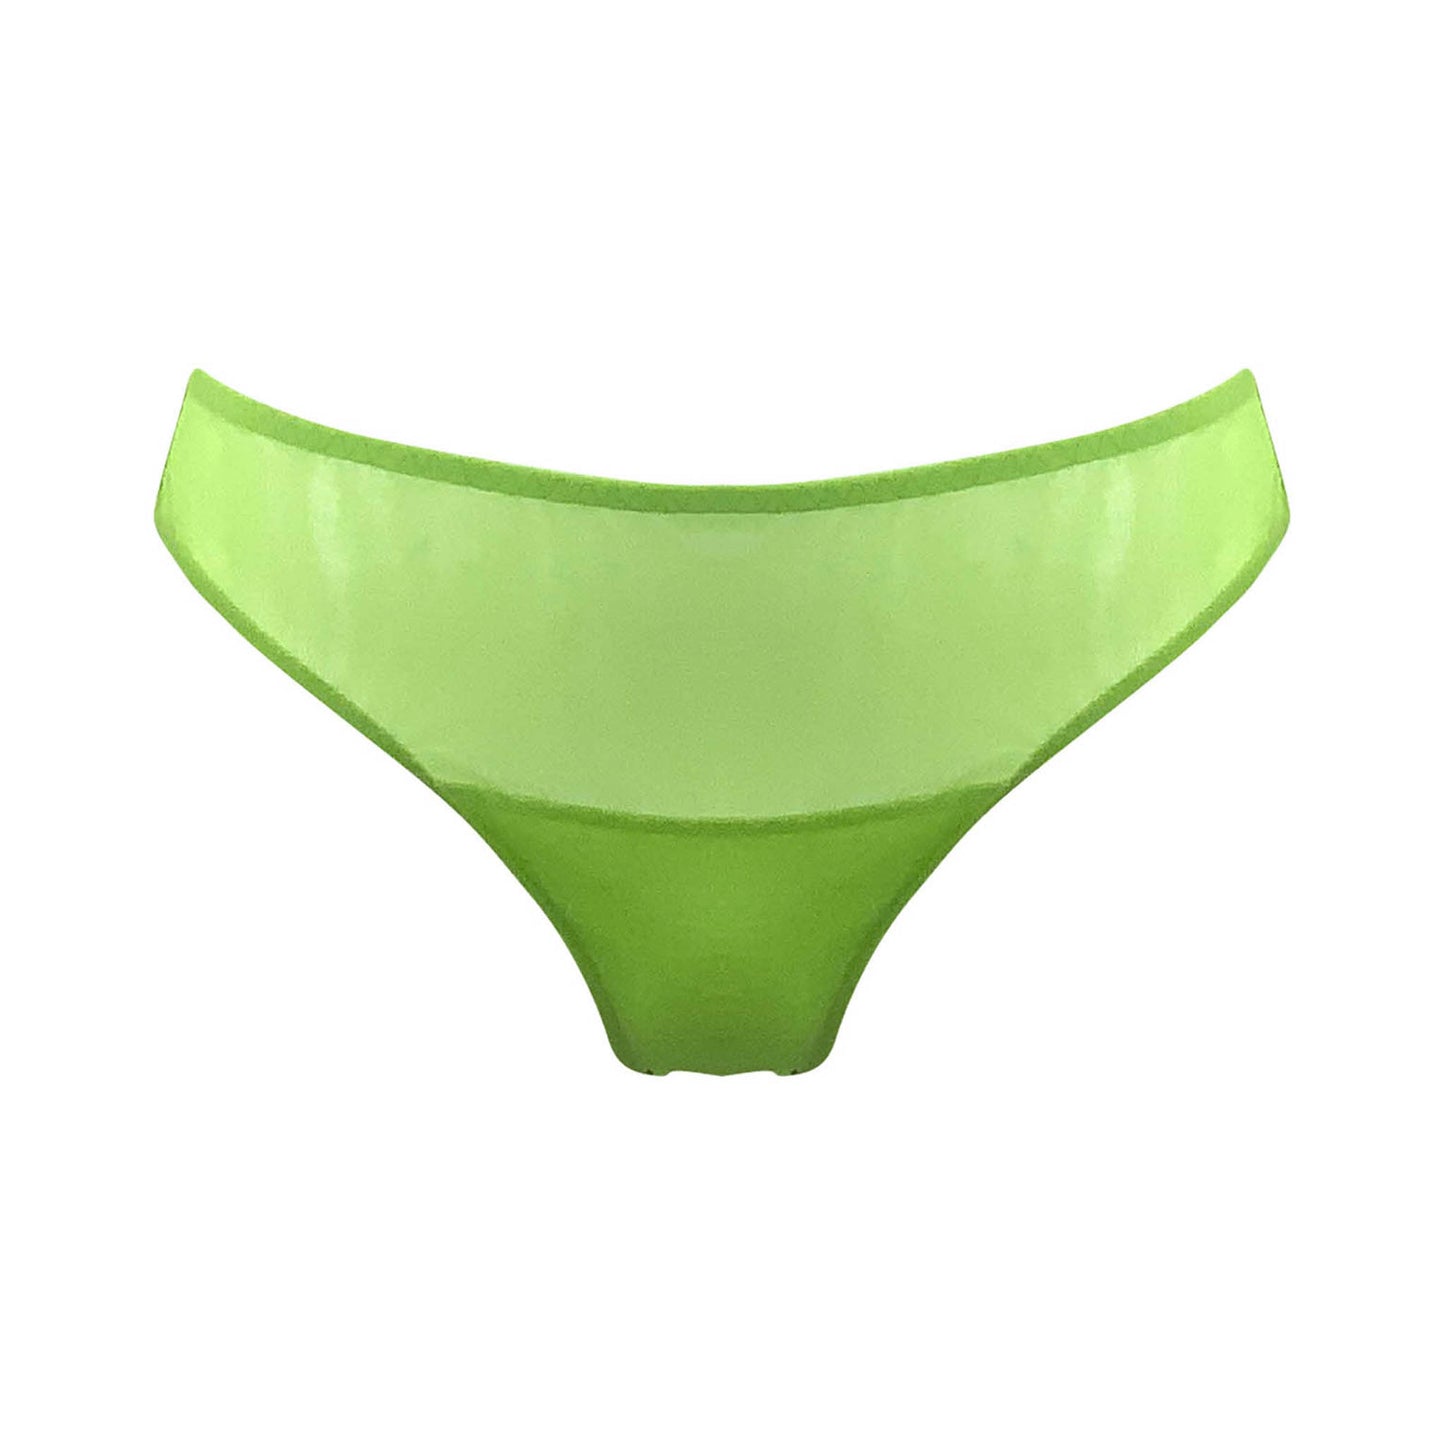 Nokaya green tulle bikini. Front look